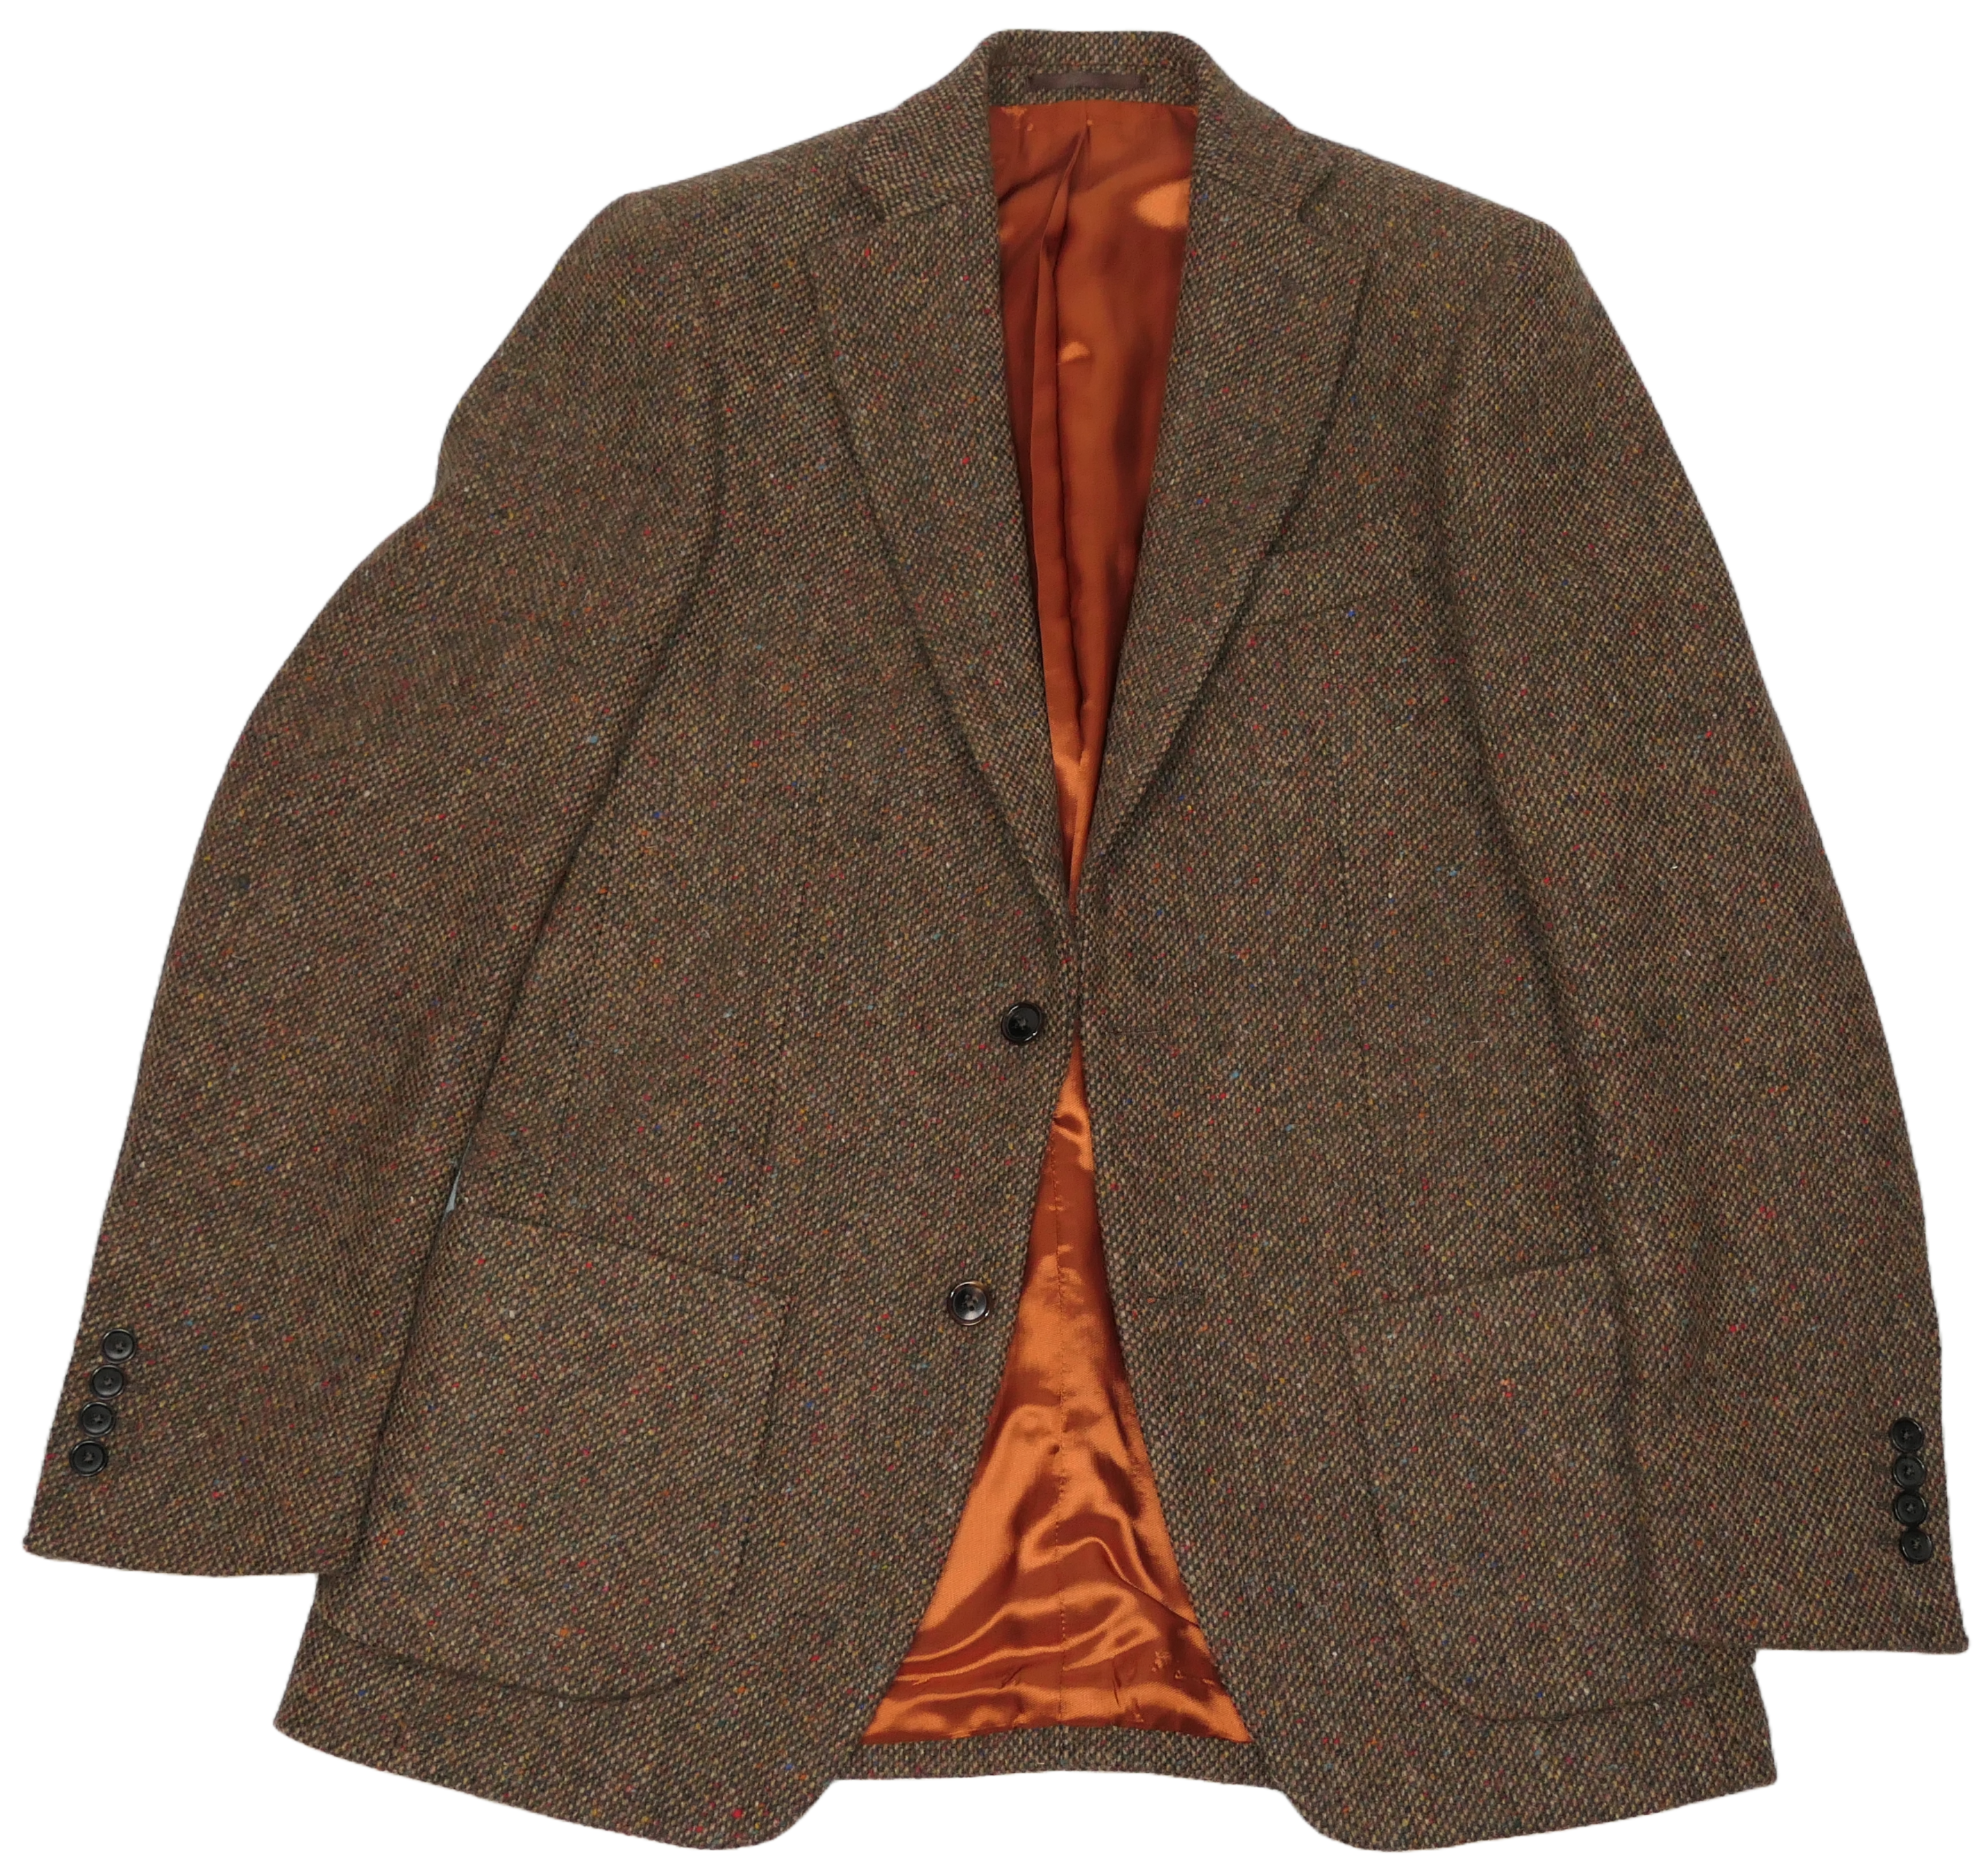 Donegal Tweed Jacket